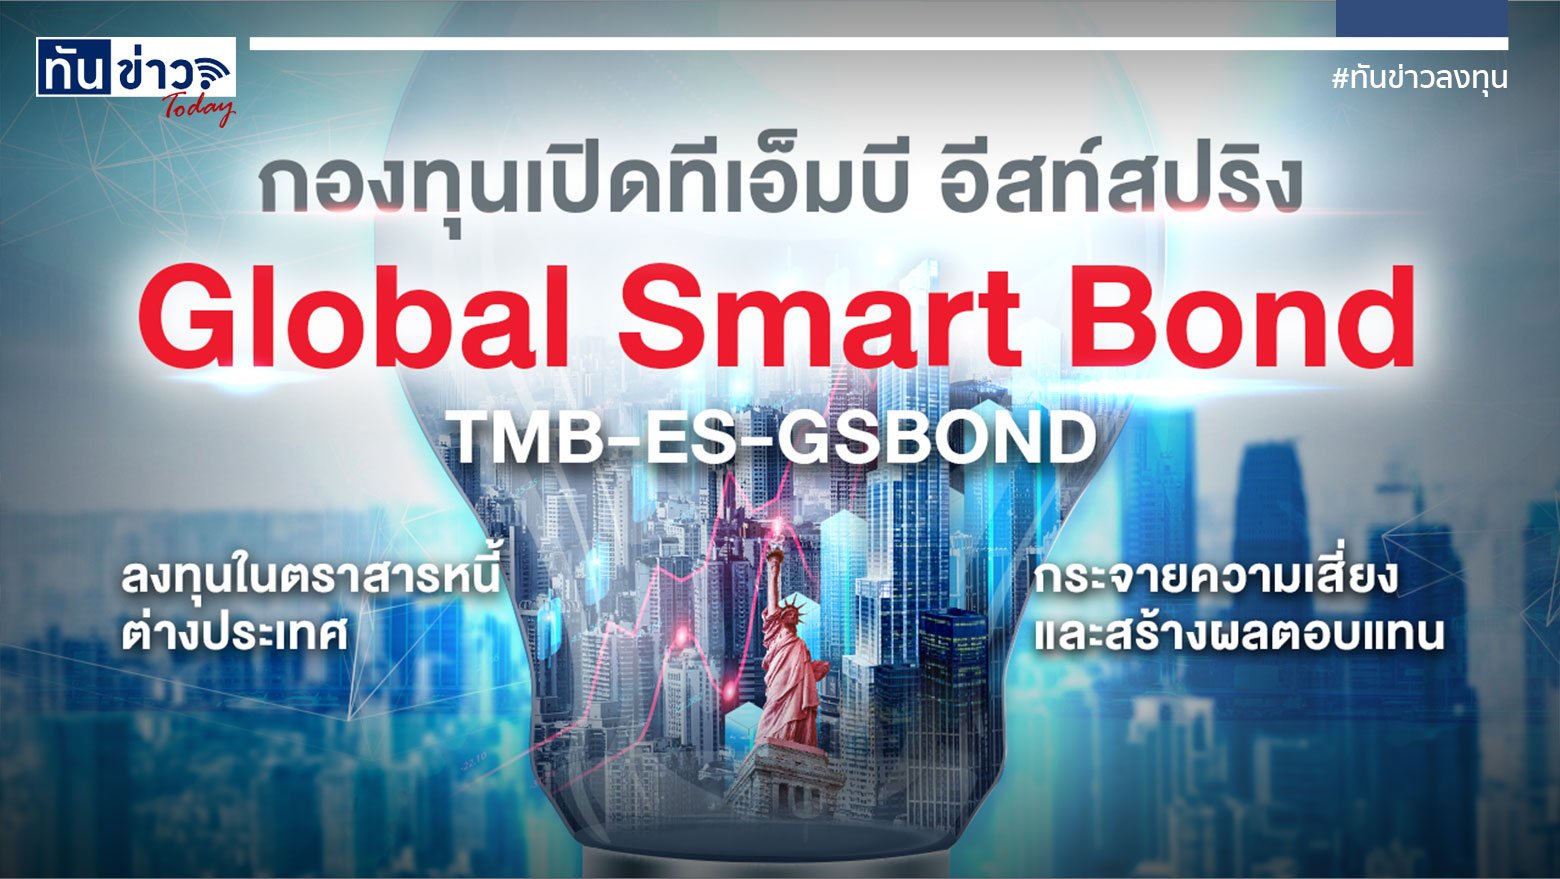 กองทุนเปิดทีเอ็มบี อีสท์สปริง Global Smart Bond